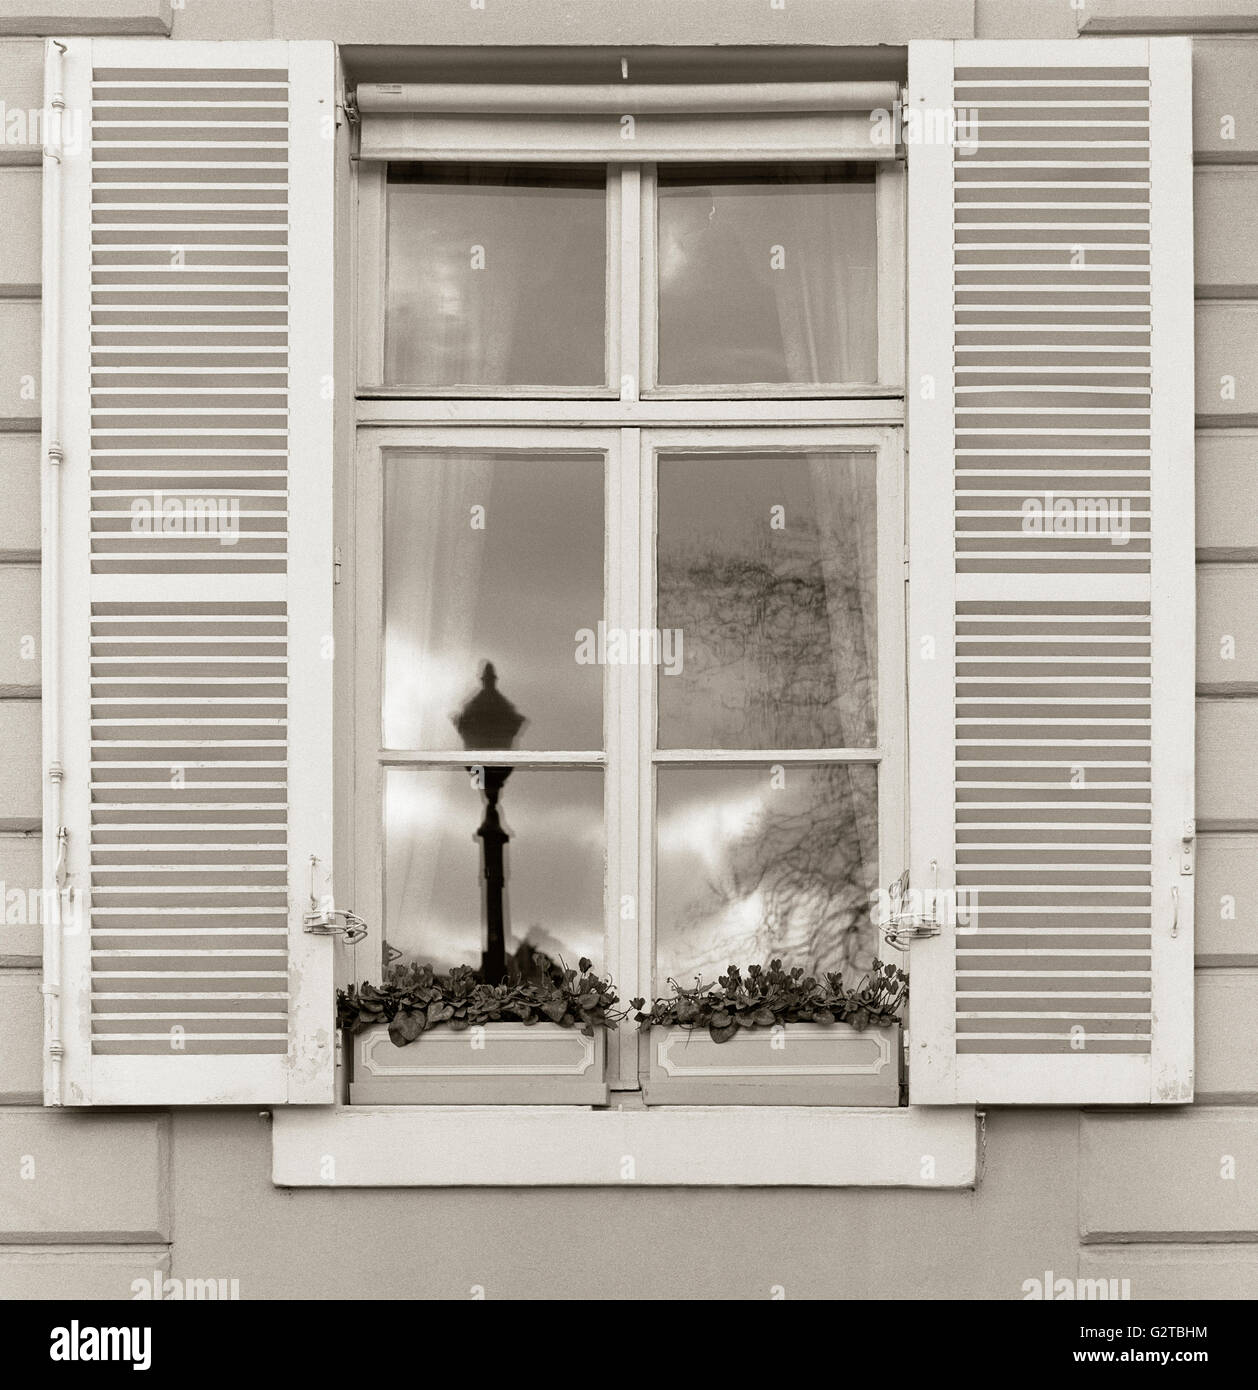 Apartment Fenster auf der Ile St. Louis mit Fensterläden, Blumenkästen und Reflexion der Laterne. Typische Paris, Frankreich Architektur reisen Details. Stockfoto